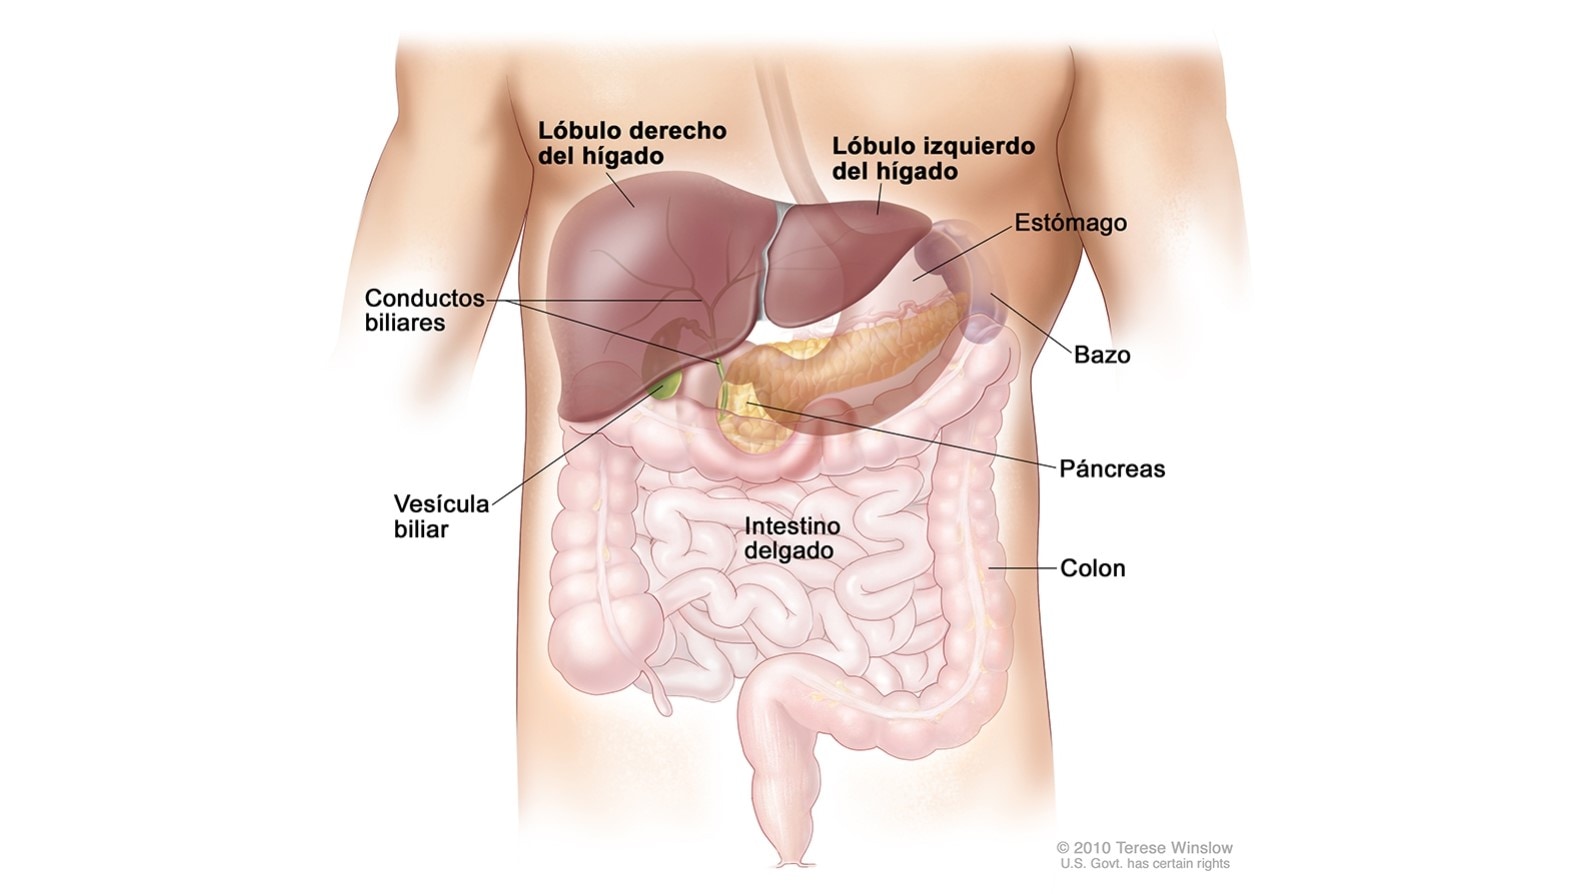 Diagrama del hígado y conductos biliares